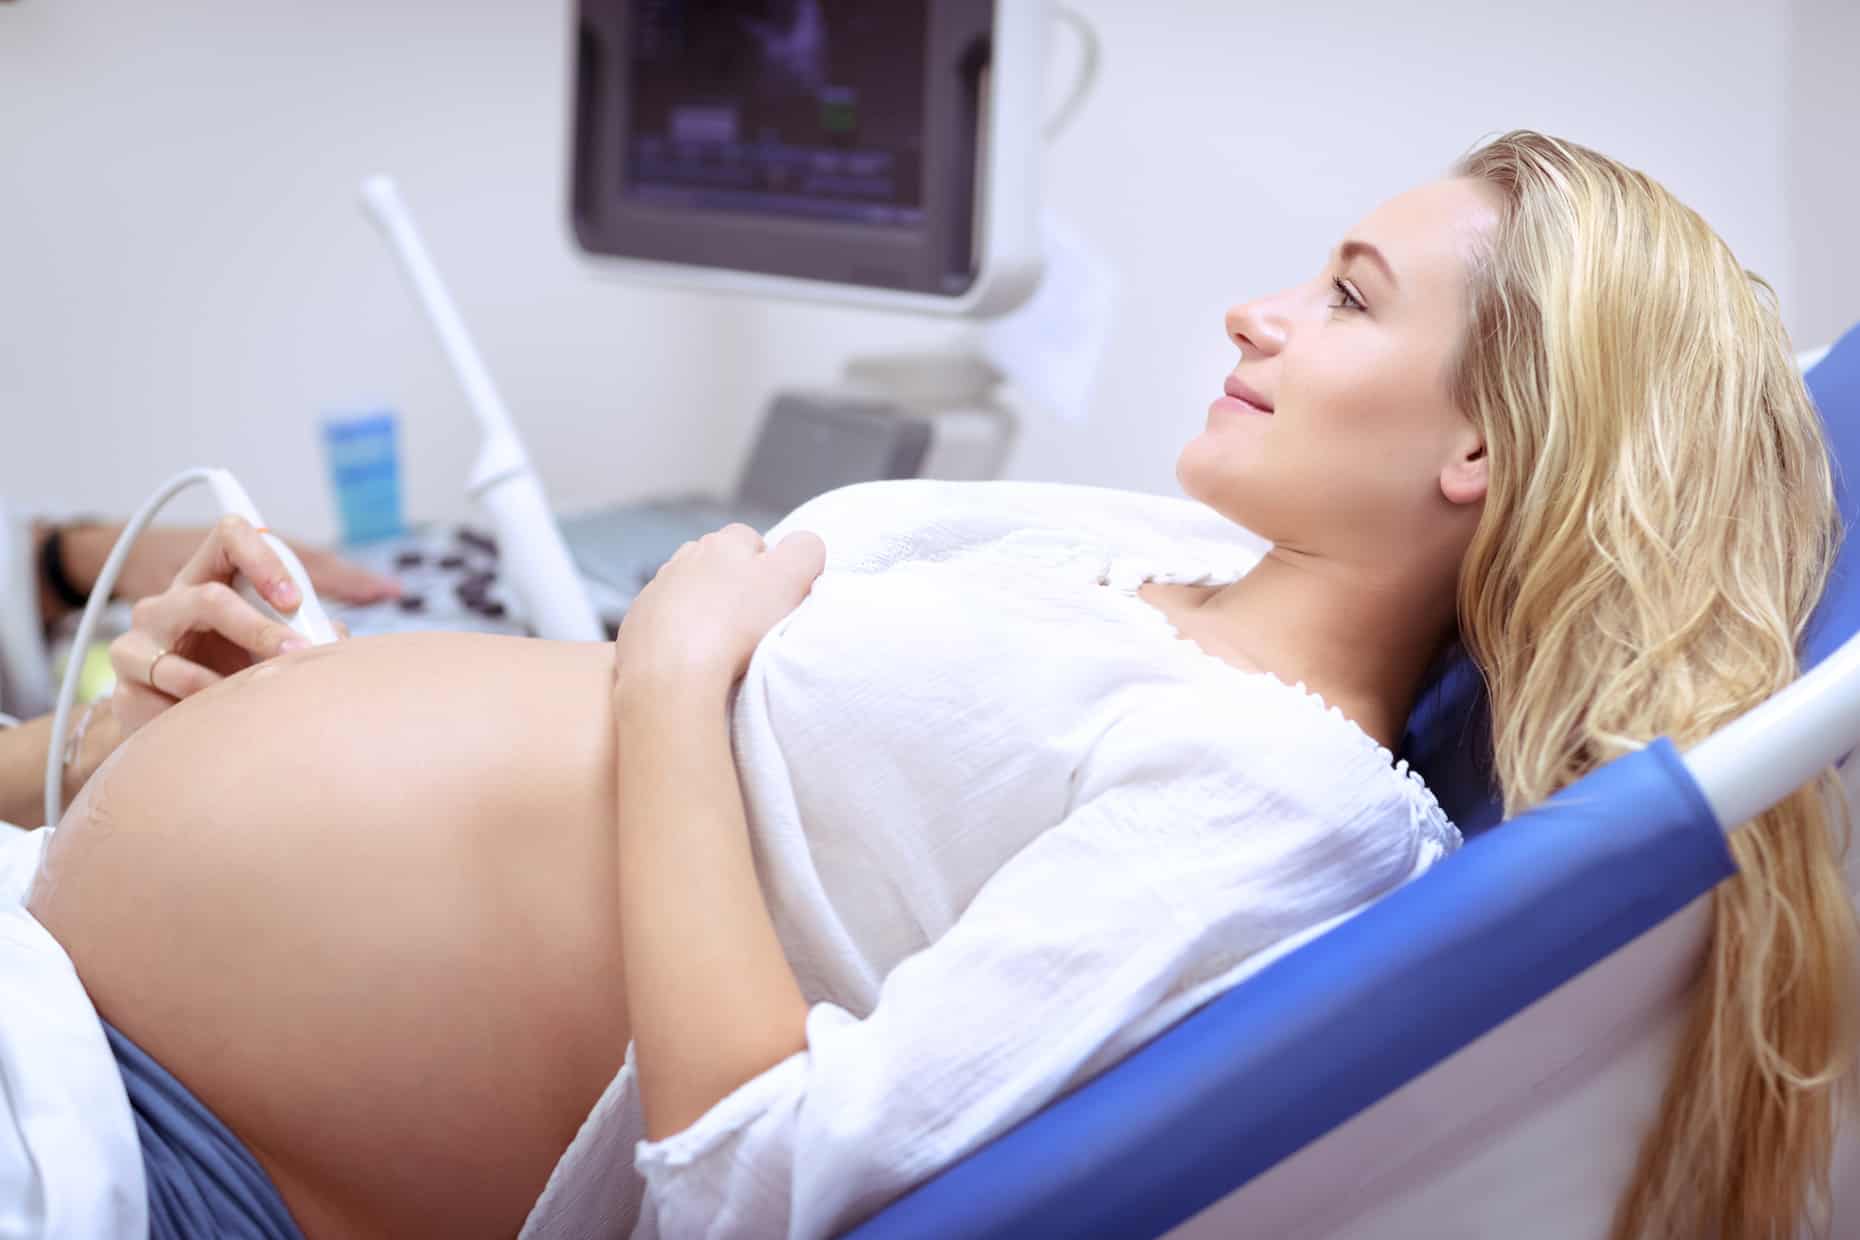 Radioklinika | Analgezja - różne metody łagodzenia bólu porodowego.